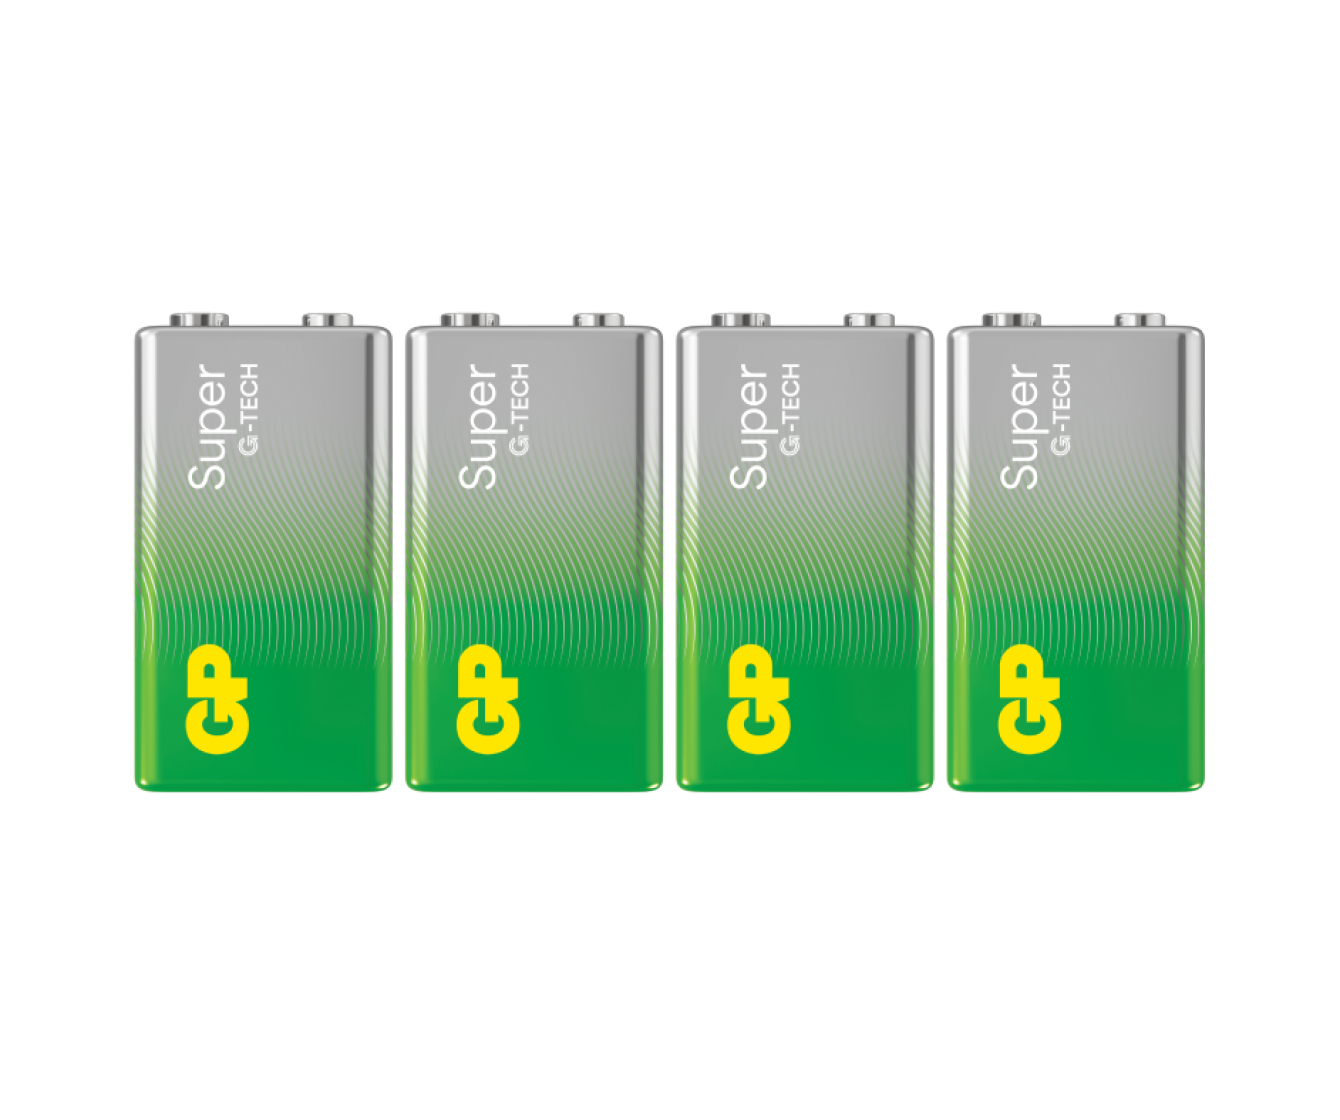 GP Super Alkaline 9V Batteries